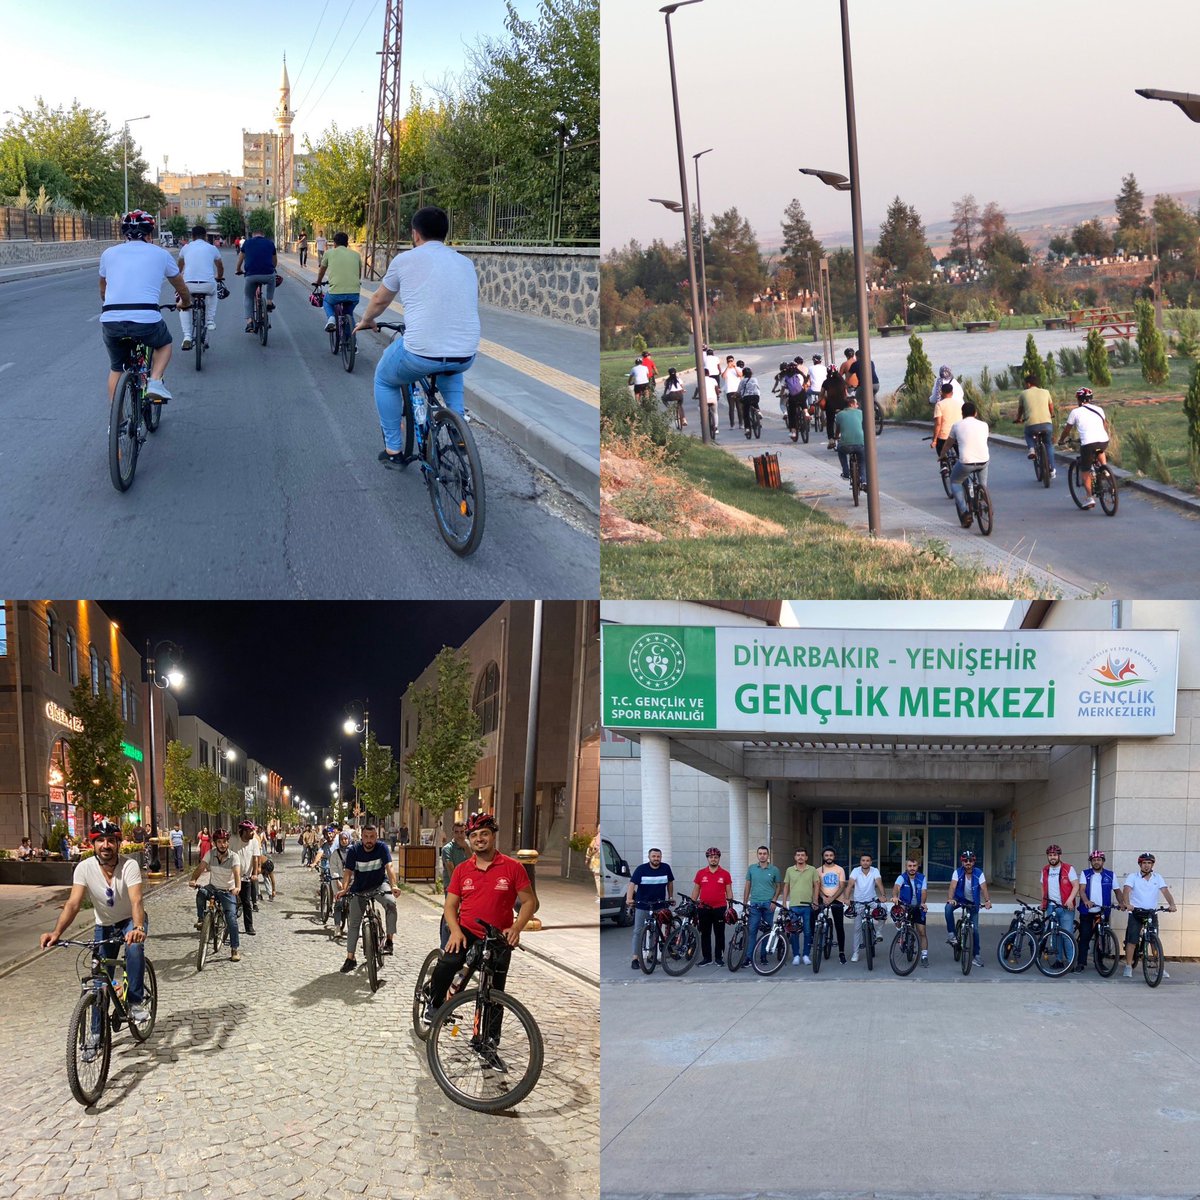 Bisiklet; trafik, sağlık ve çevre dostu bir ulaşım aracıdır.☘️ Bisiklet sporunun önemini vurgulamak için Sağlıkta Genç Yaklaşımlar Derneği ile şehir turundayız.🚴‍♂️ #MerkezimdeBuYaz #GSBGM